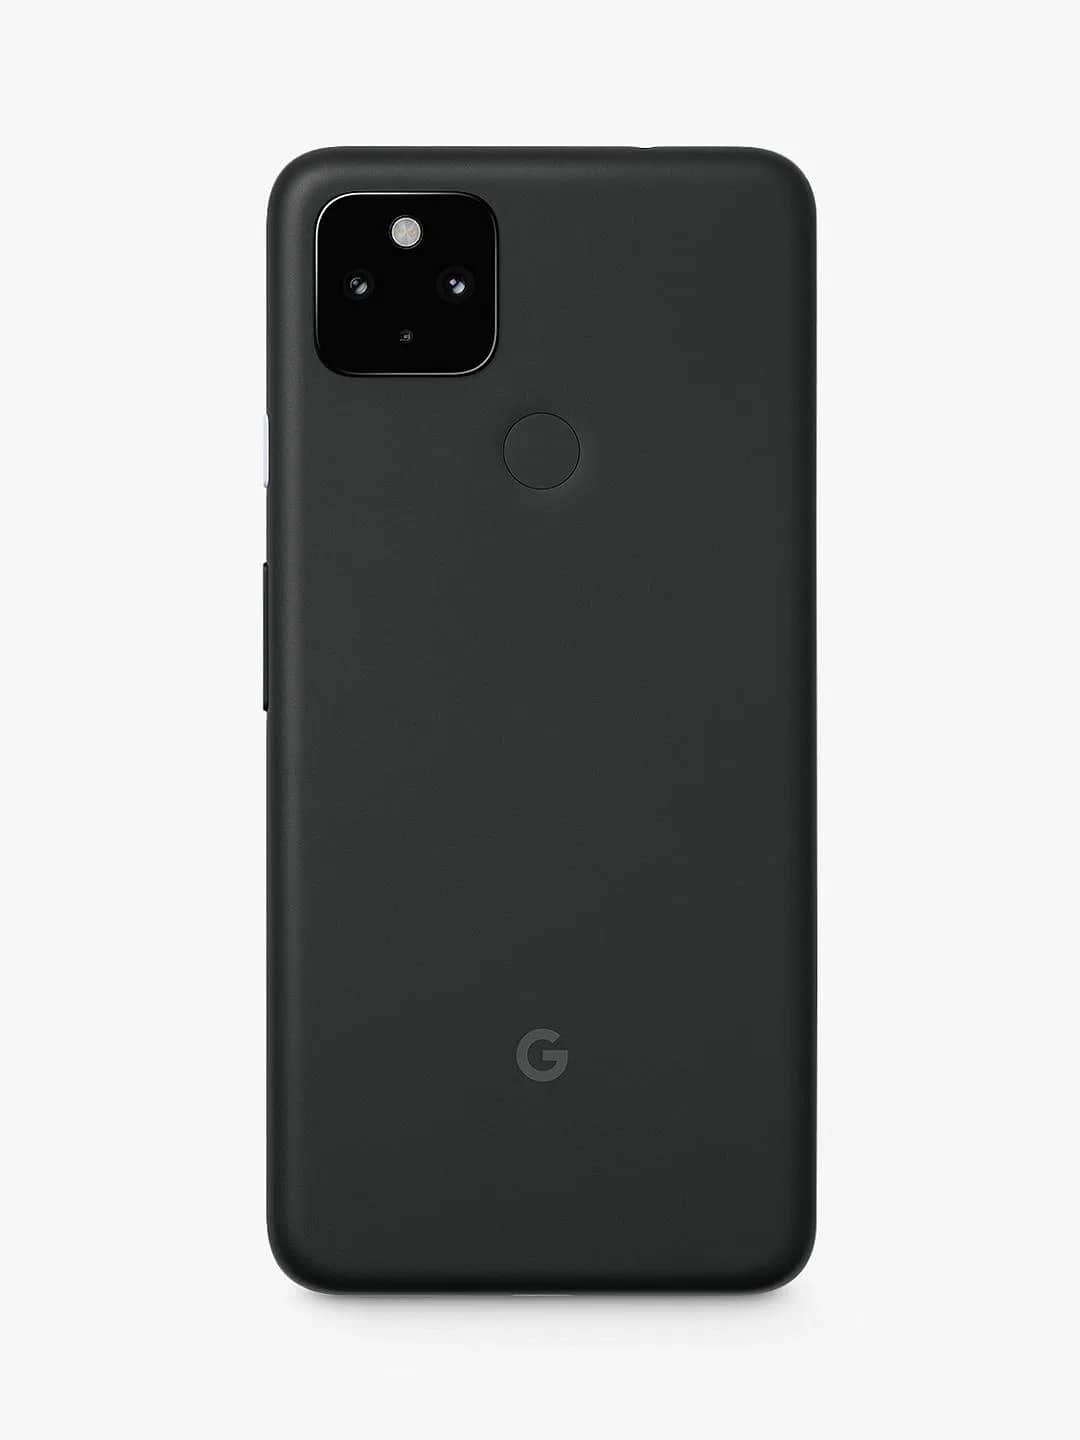 Google-Pixel-4a-5G-rendu-arriere-fiche-technique